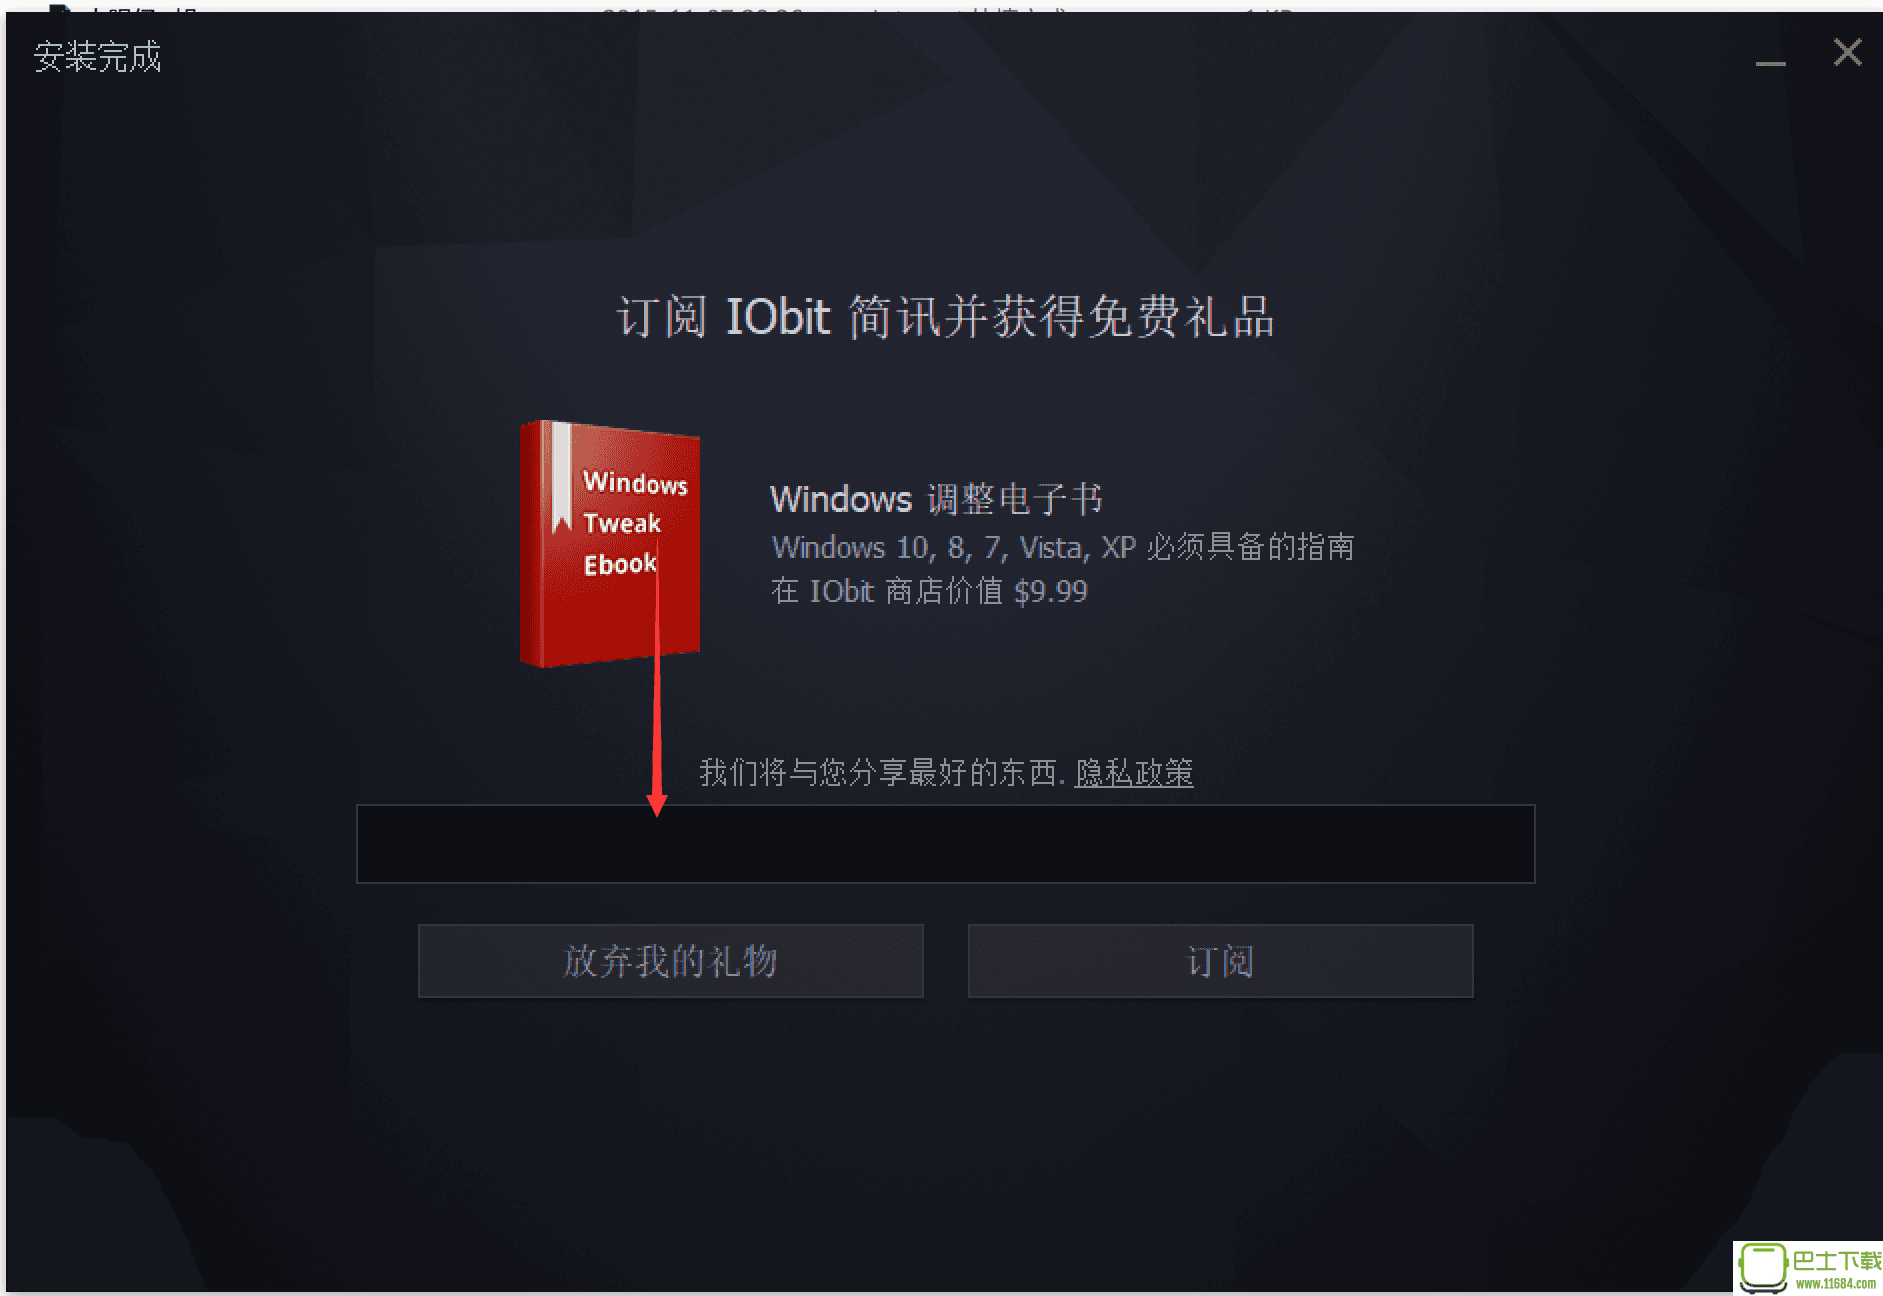 功能强大的系统软件IObit Malware Fighter Pro 6.2.0.4770 中文破解版下载